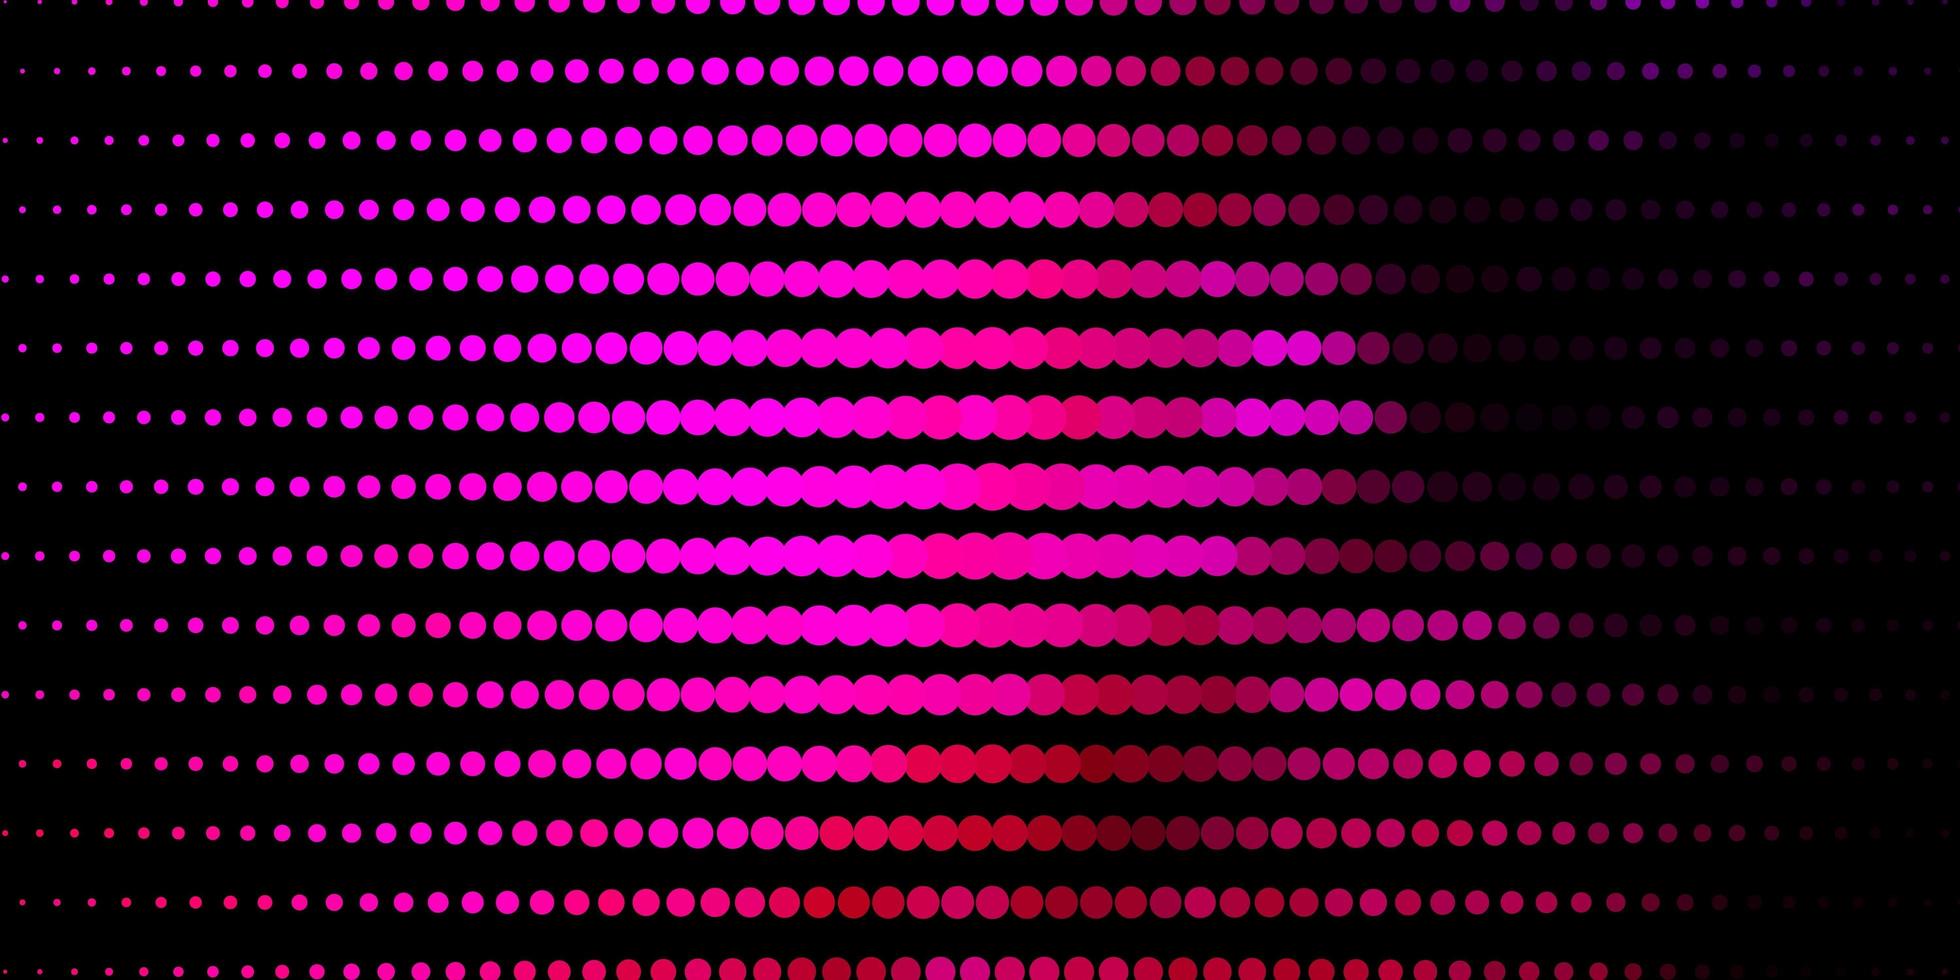 sfondo vettoriale rosa scuro con cerchi.